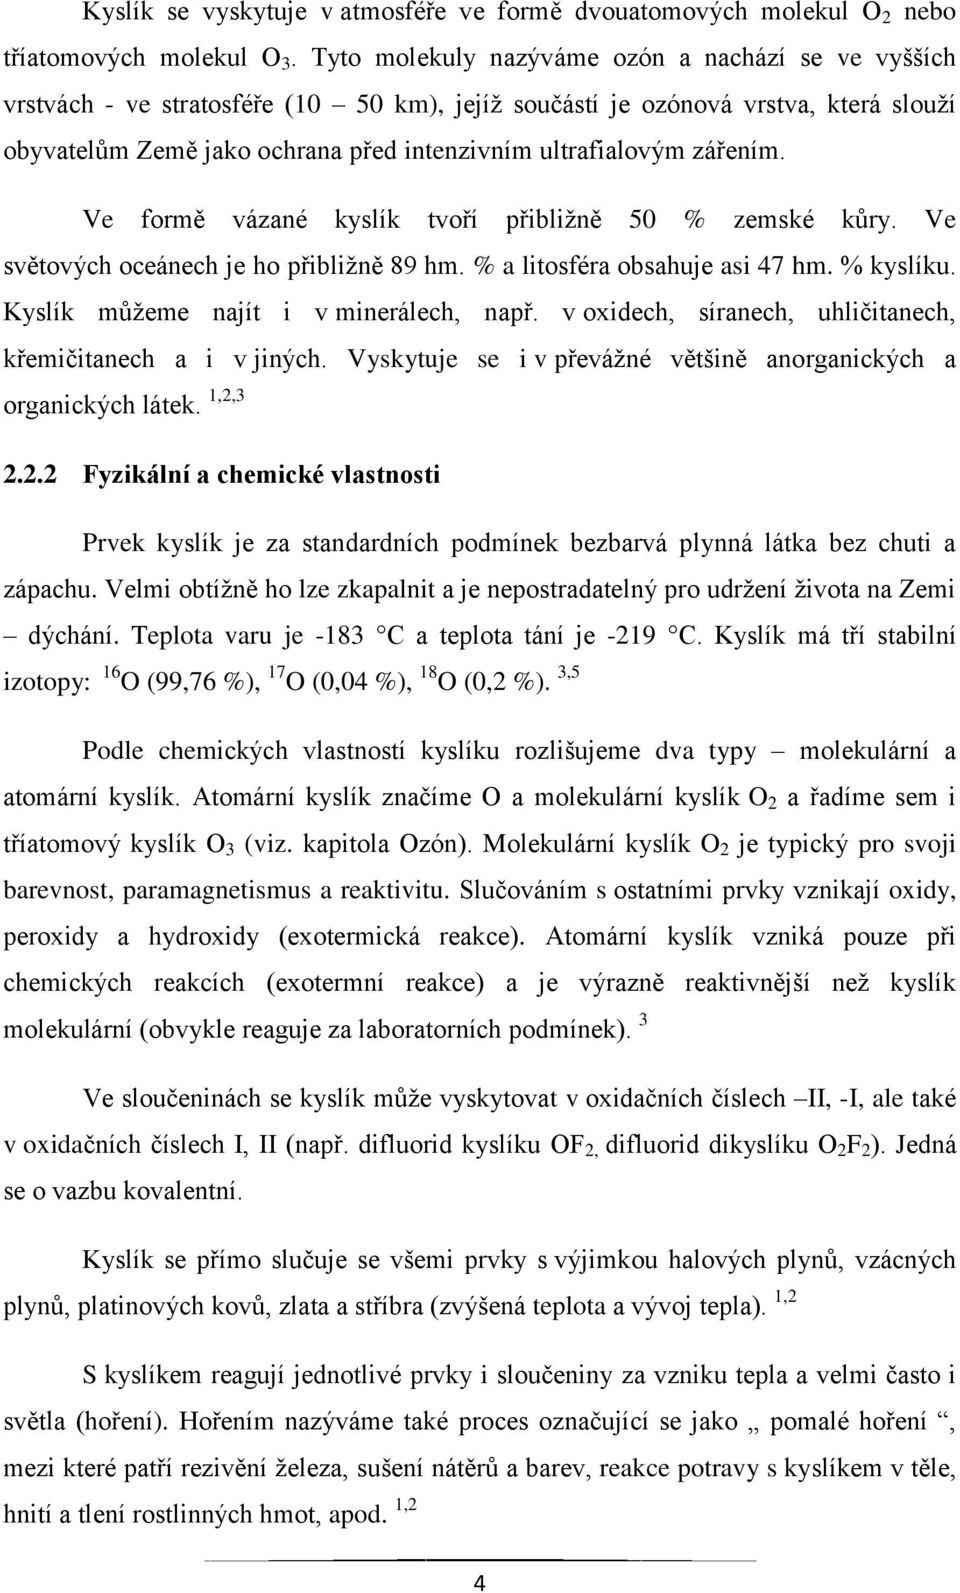 Západočeská univerzita v Plzni. Chemické experimenty s chalkogeny a jejich  sloučeninami ve výuce chemie - PDF Stažení zdarma